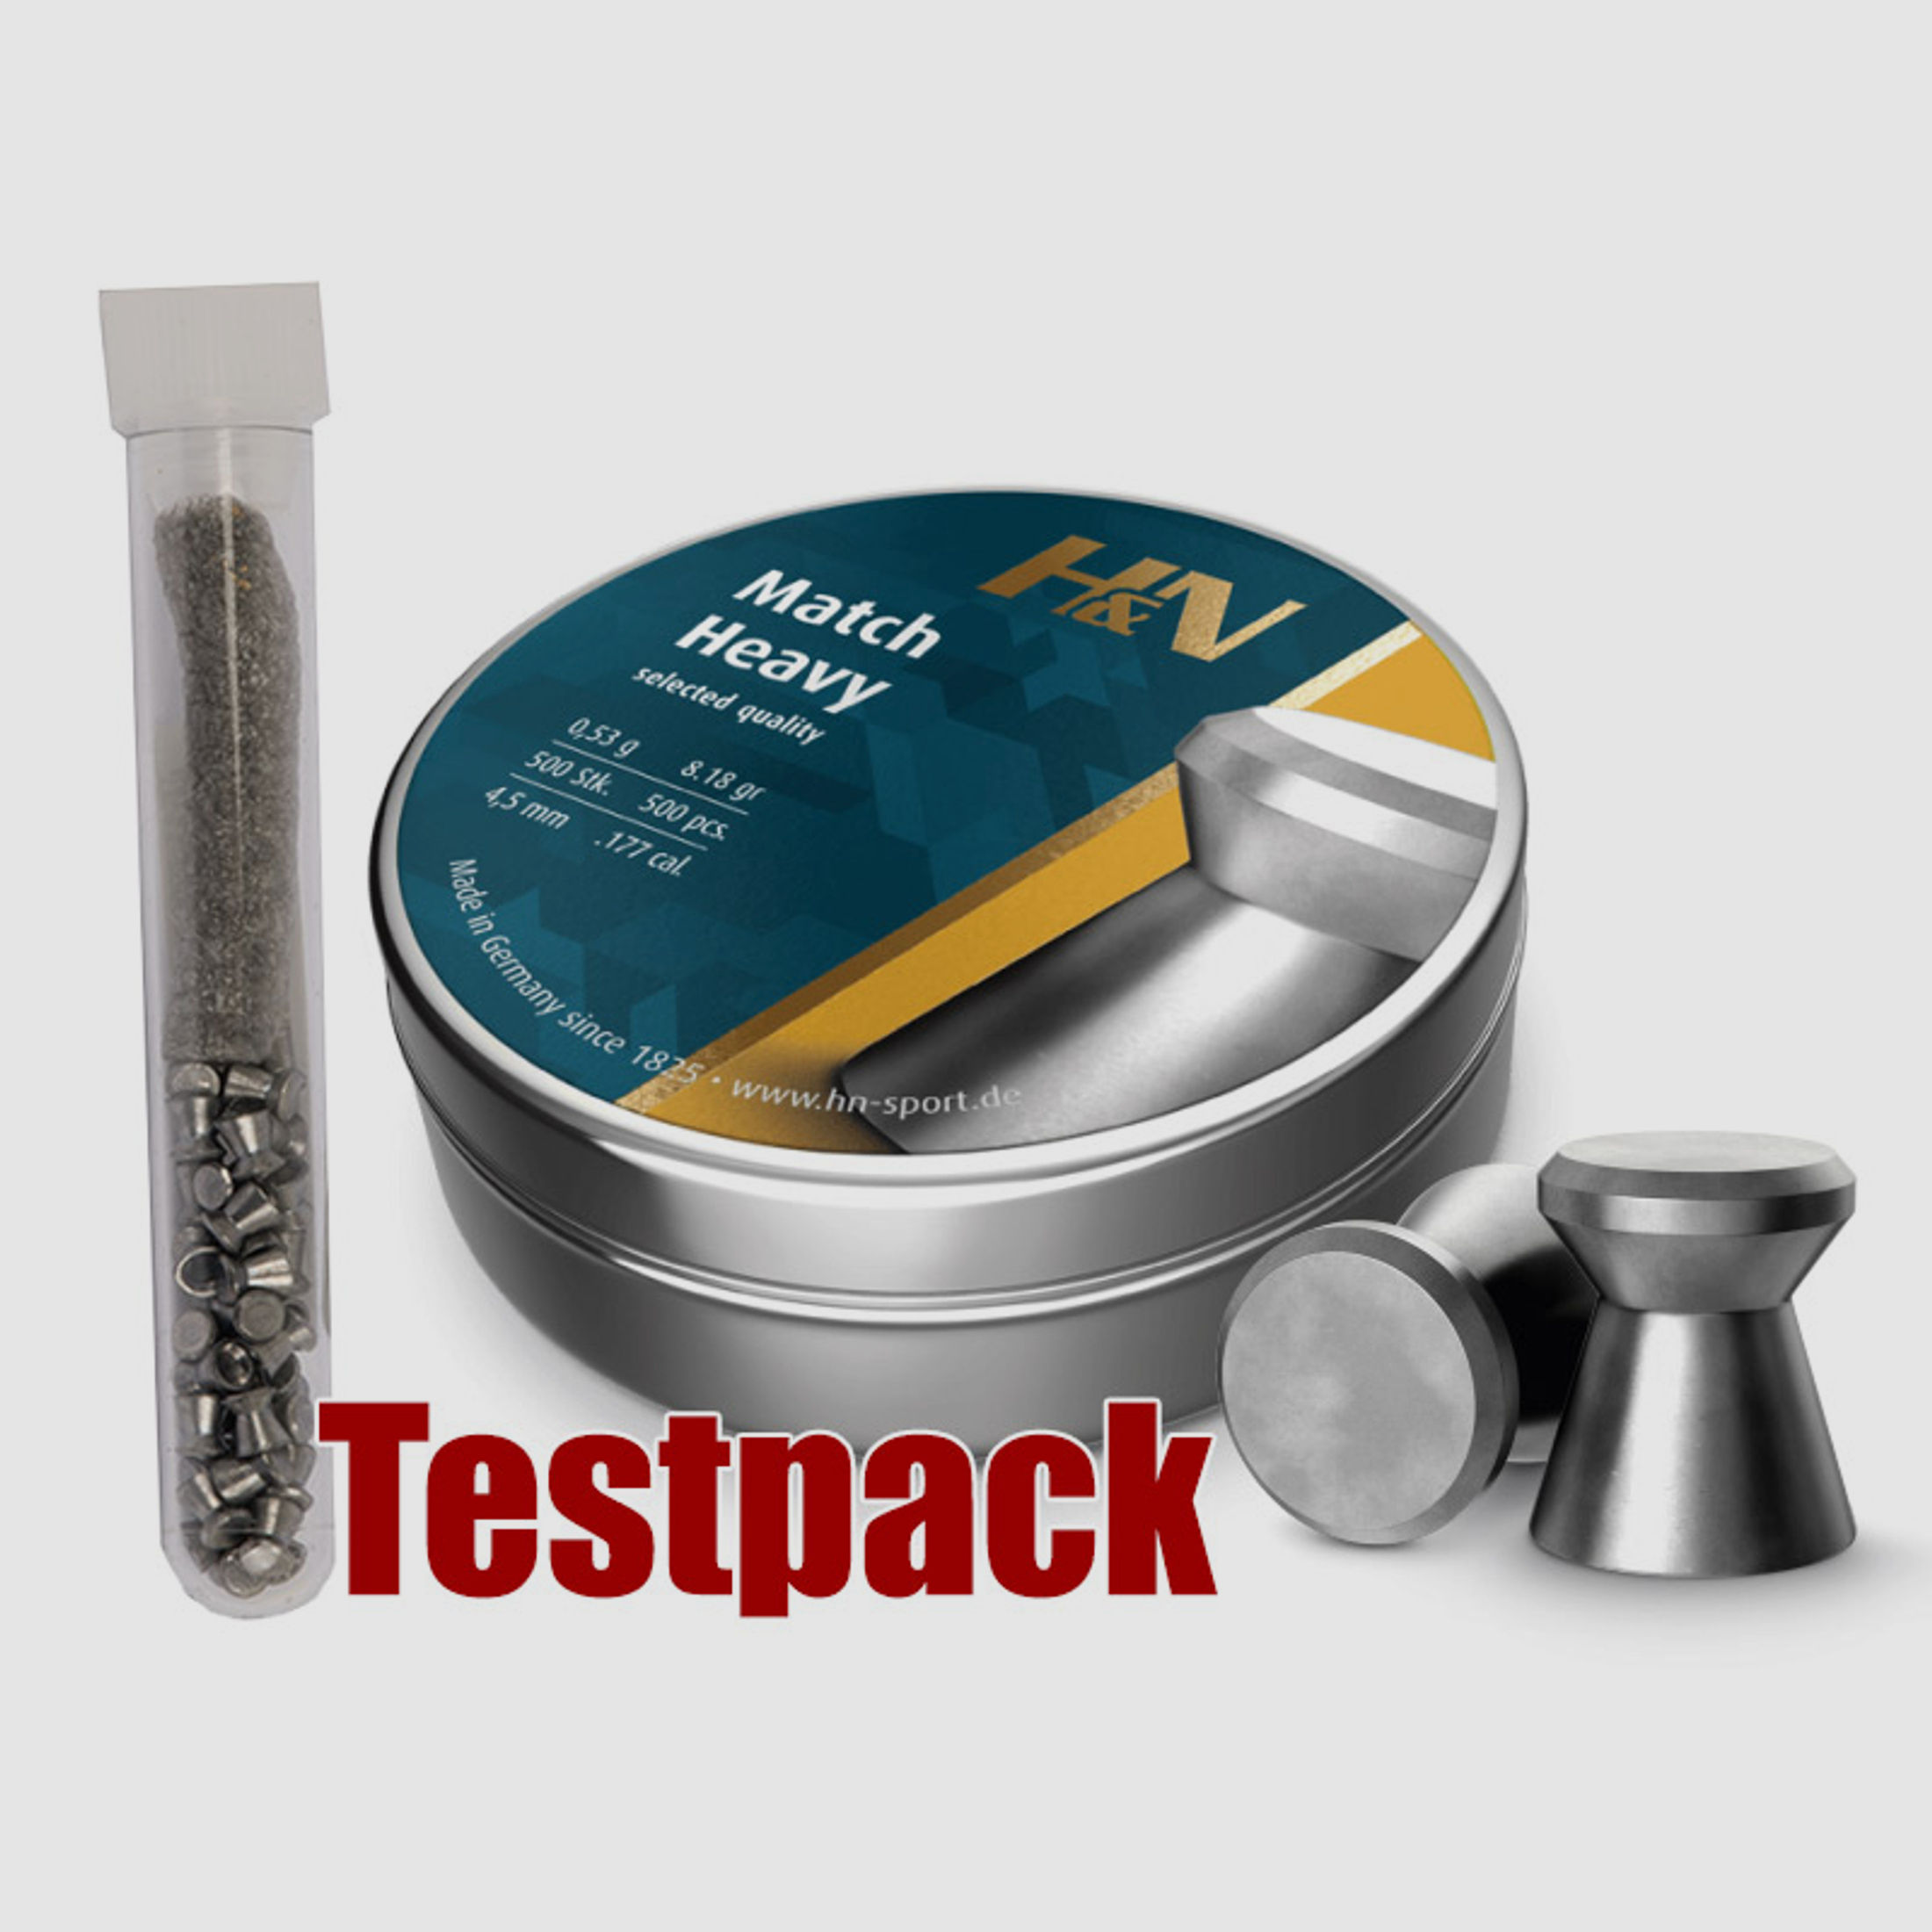 Testpack Flachkopf Diabolos H&N Match Heavy Kaliber 4,5 mm 0,53 g glatt 40 StĂĽck